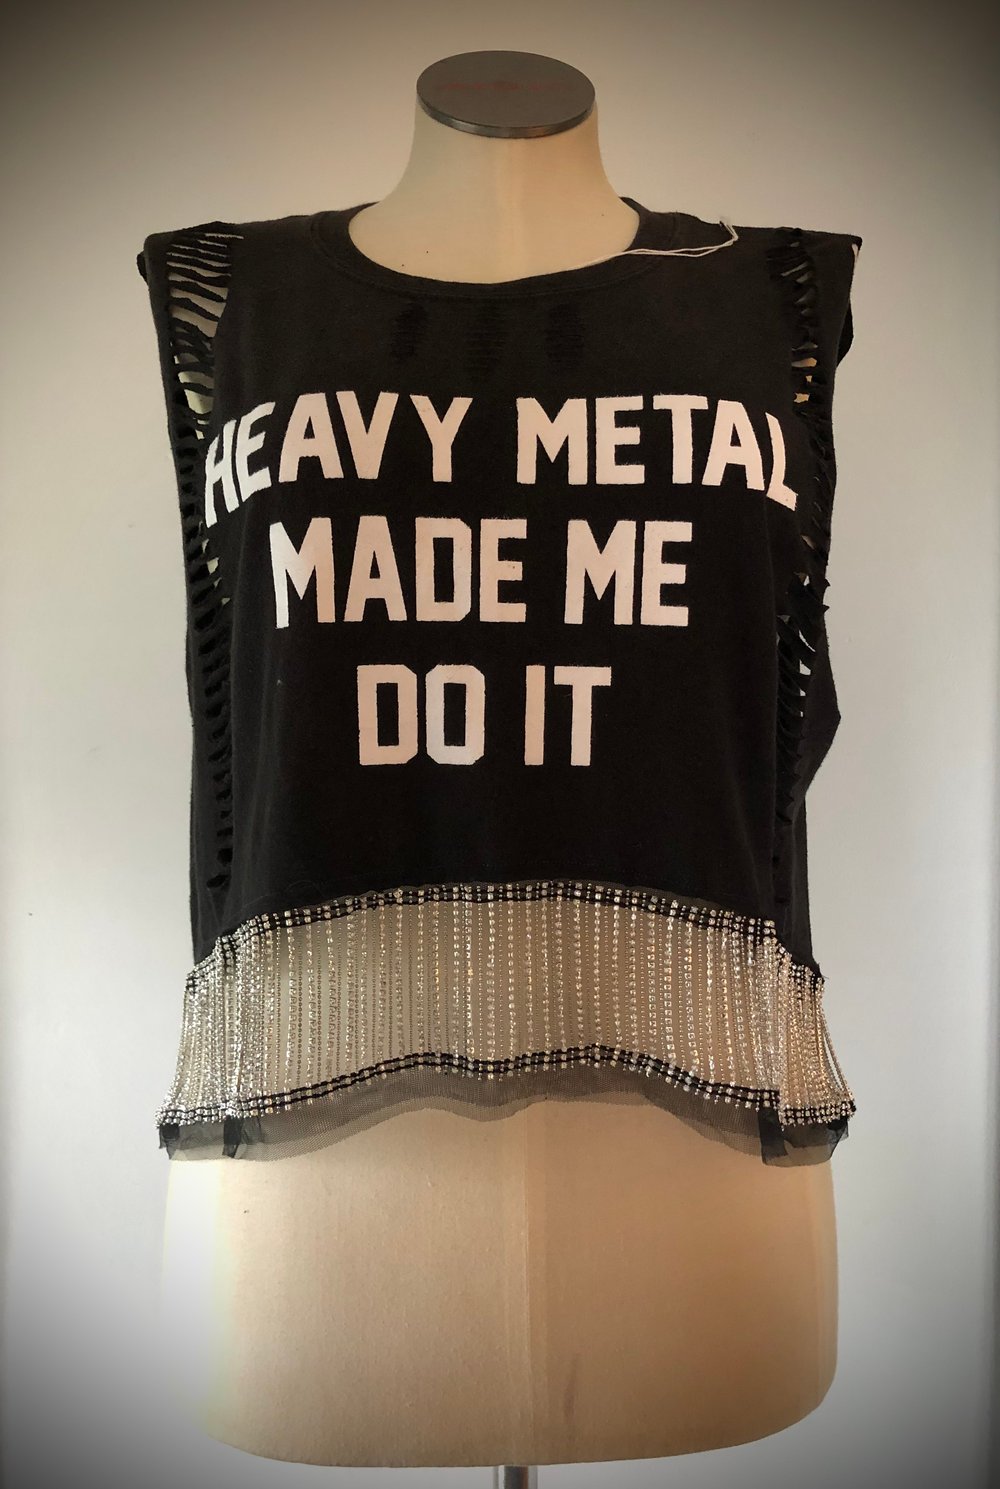 Upcycled “Heavy Metal Made Me Do It” rhinestone fringe tee